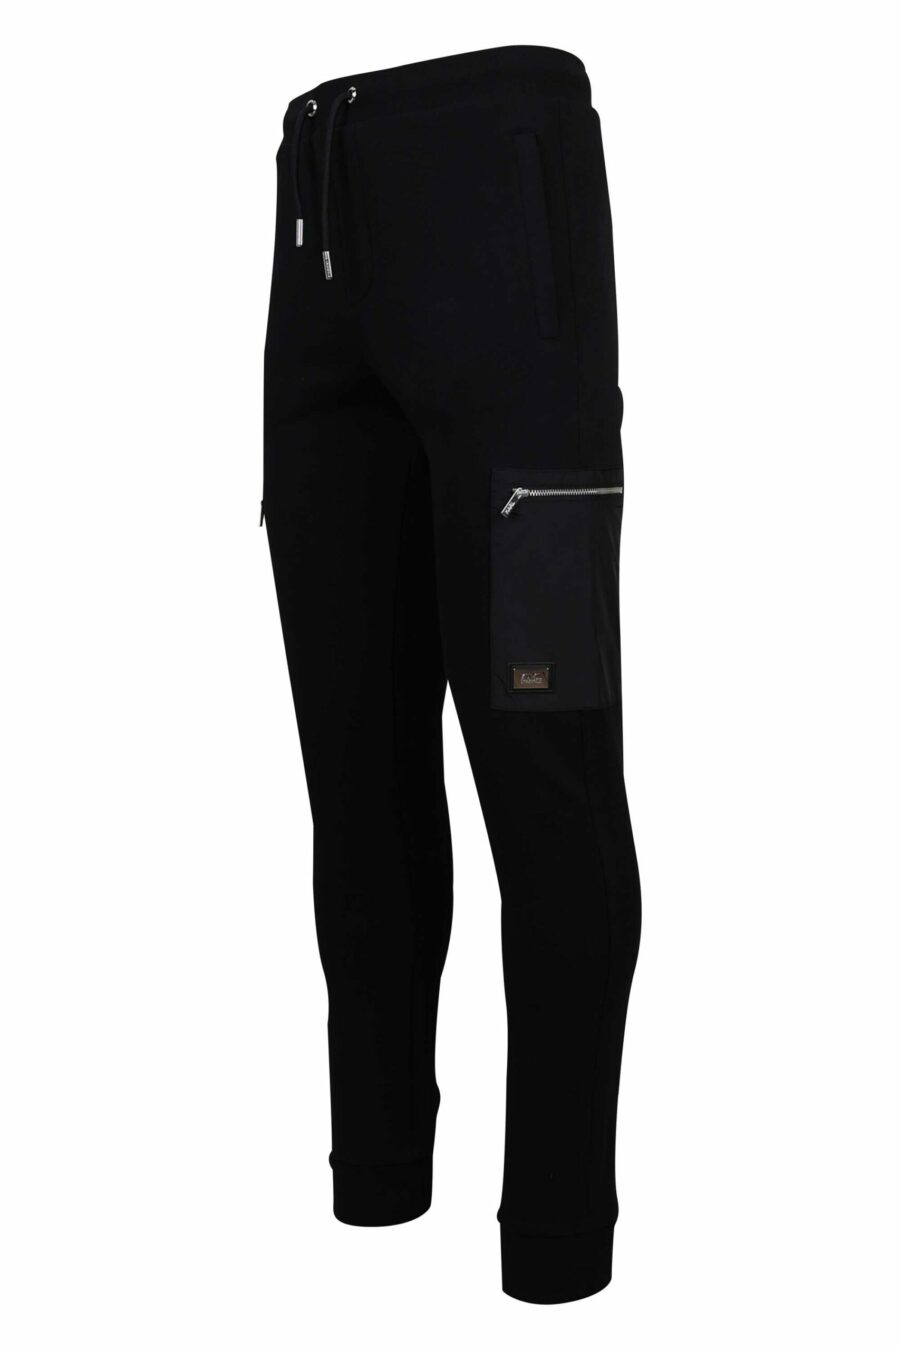 Pantalón de chándal negro con bolsillos laterales con cremallera - 4062226654265 1 1 scaled